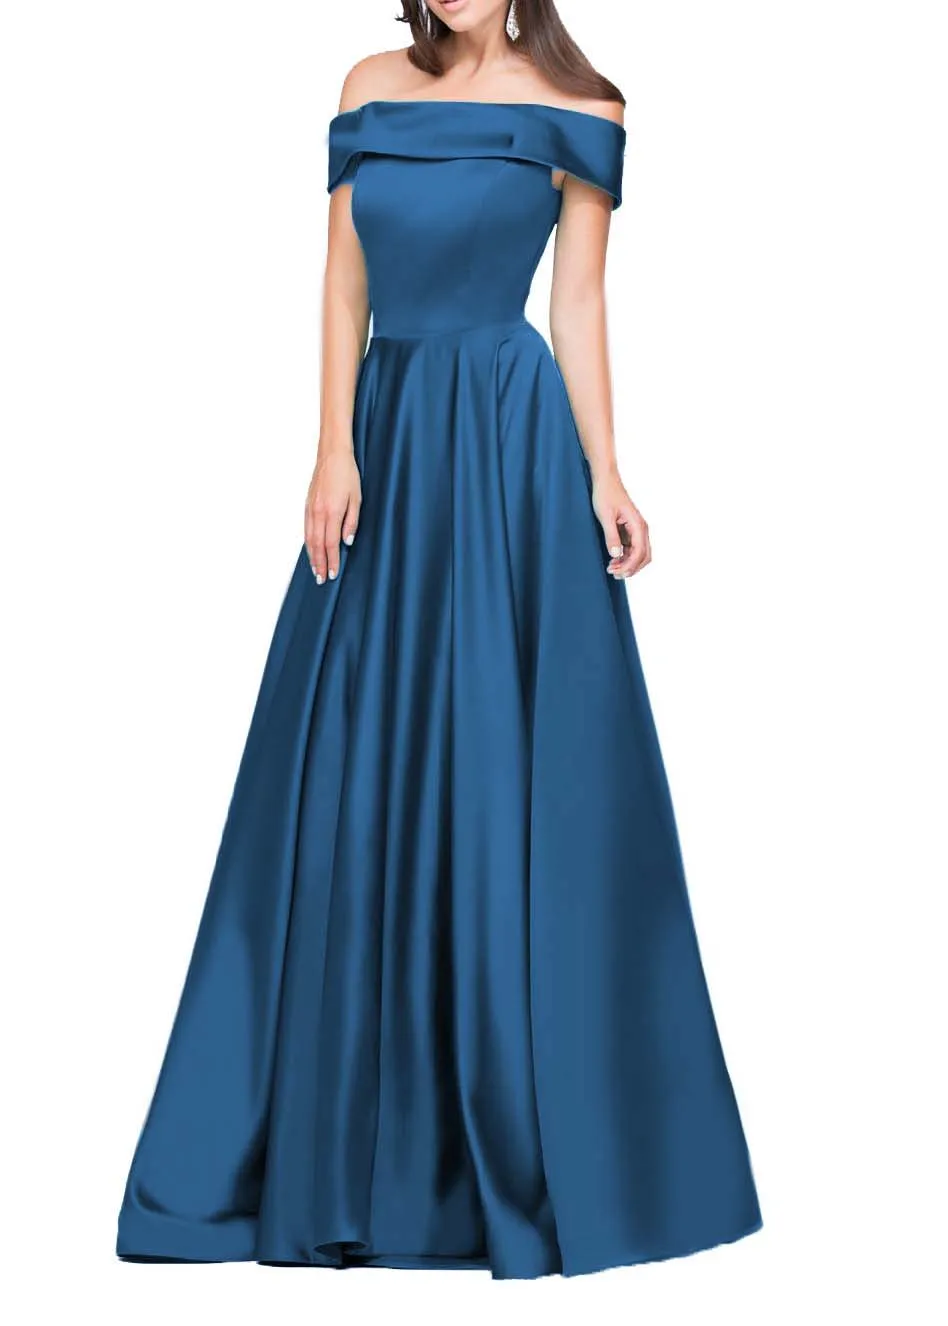 Baijinbay vestido de festa длинное вечернее платье трапециевидной формы, простое вечернее платье с открытыми плечами, торжественное Пышное Платье на шнуровке, Robe De Soiree - Цвет: Cobalt Blue